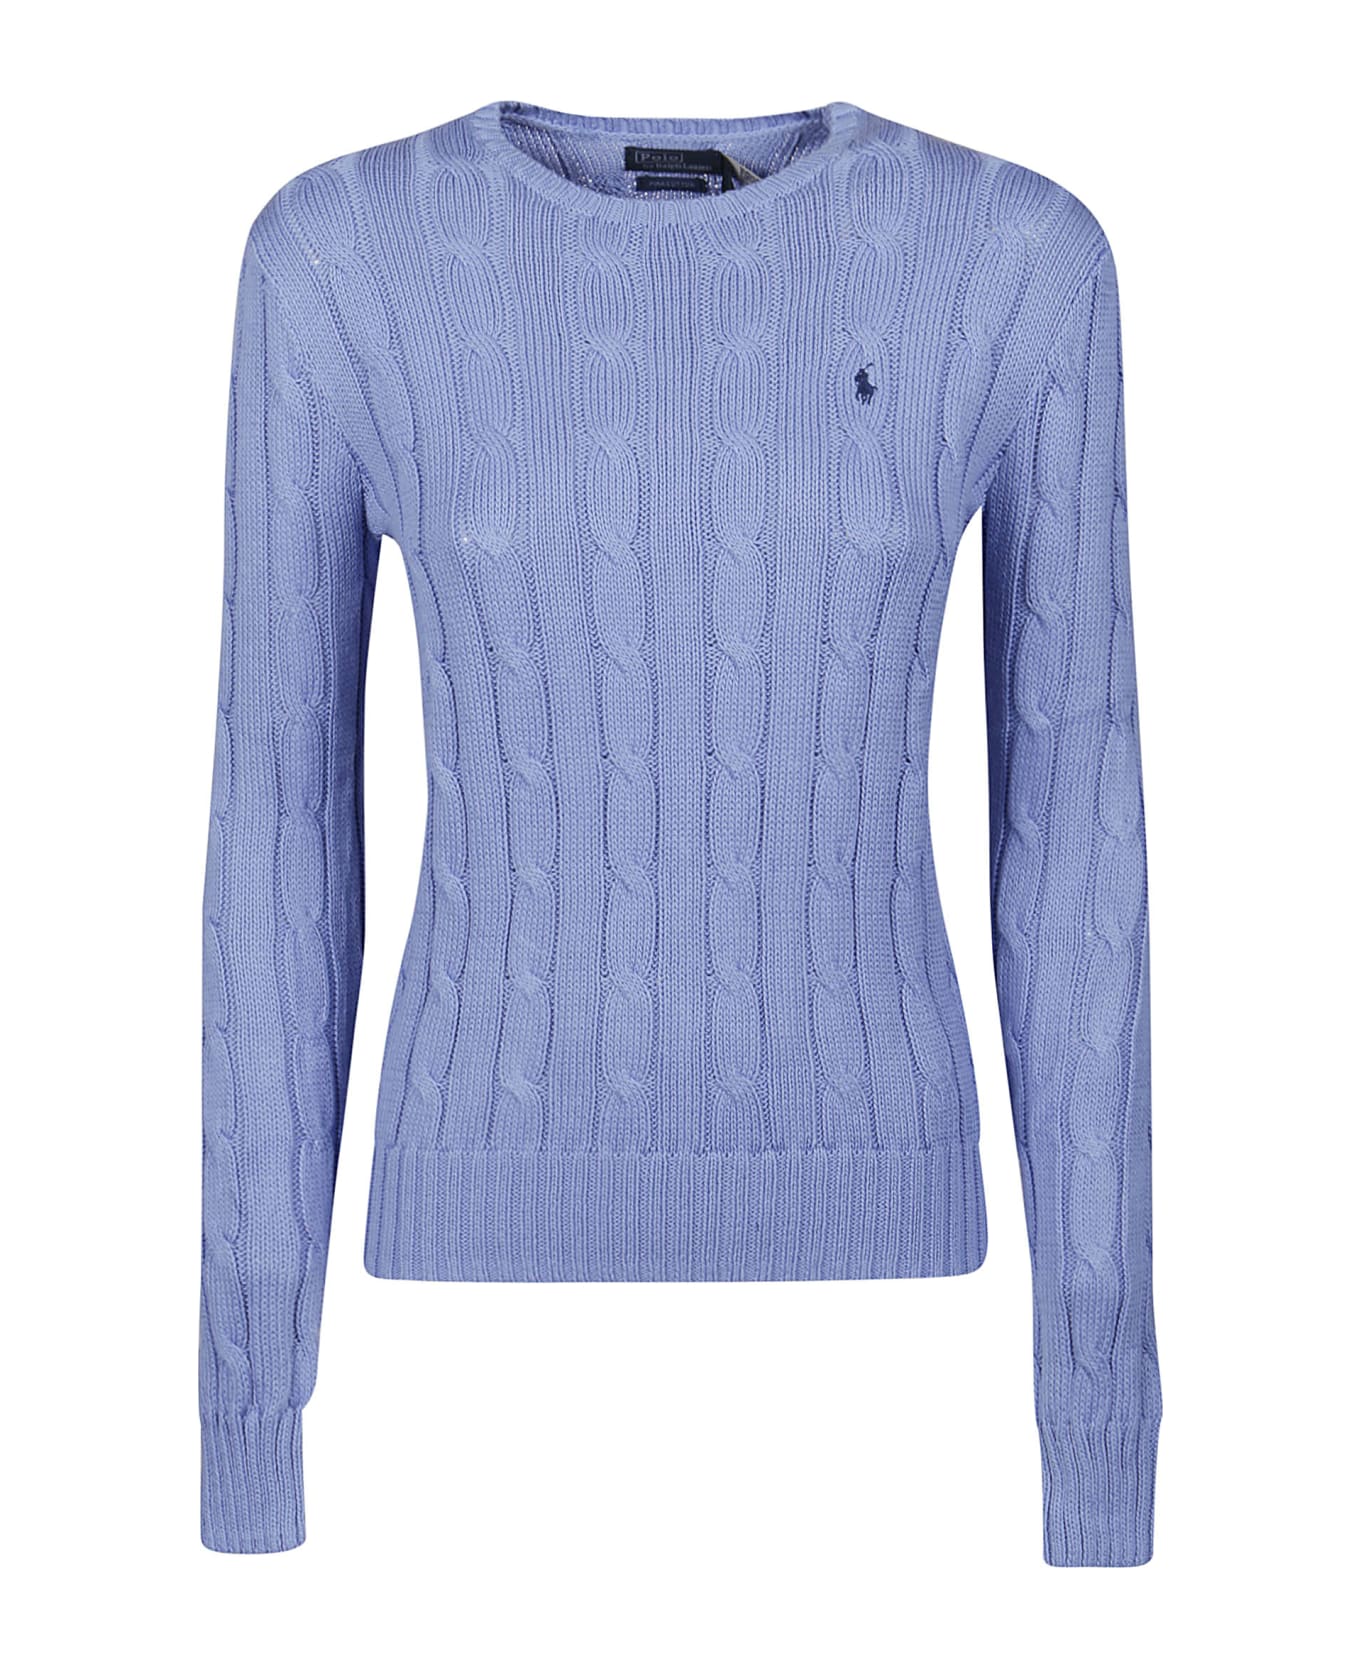 Polo Ralph Lauren Julianna Sweater - New Litchfield Blue